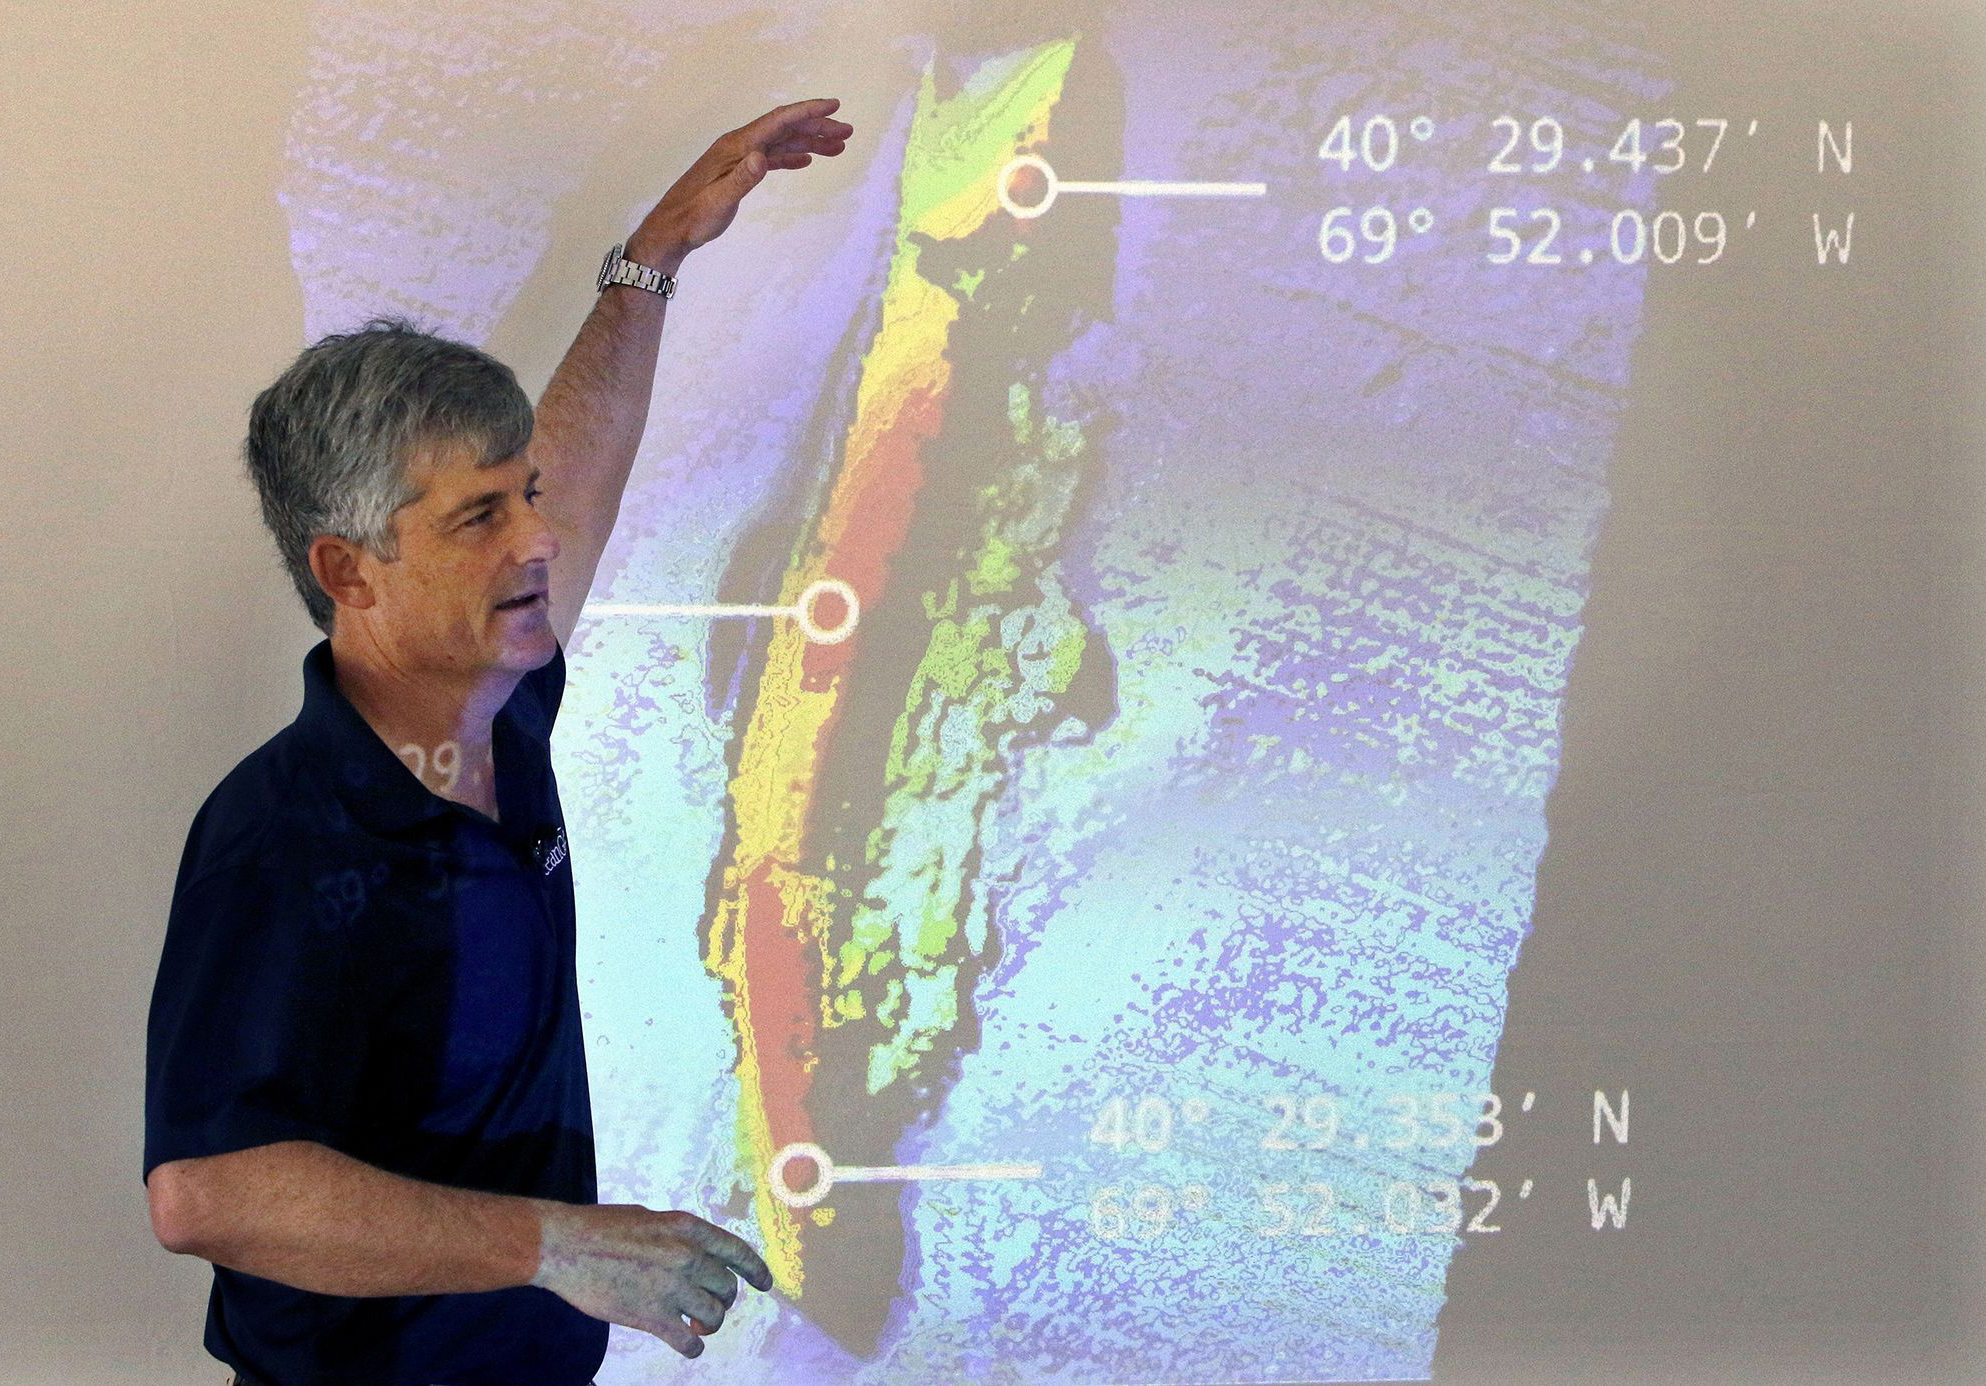 El director ejecutivo y cofundador de OceanGate, Stockton Rush, habla frente a una imagen proyectada de los restos del transatlántico SS Andrea Doria durante una presentación sobre sus hallazgos después de una exploración submarina, el 13 de junio de 2016, en Boston.